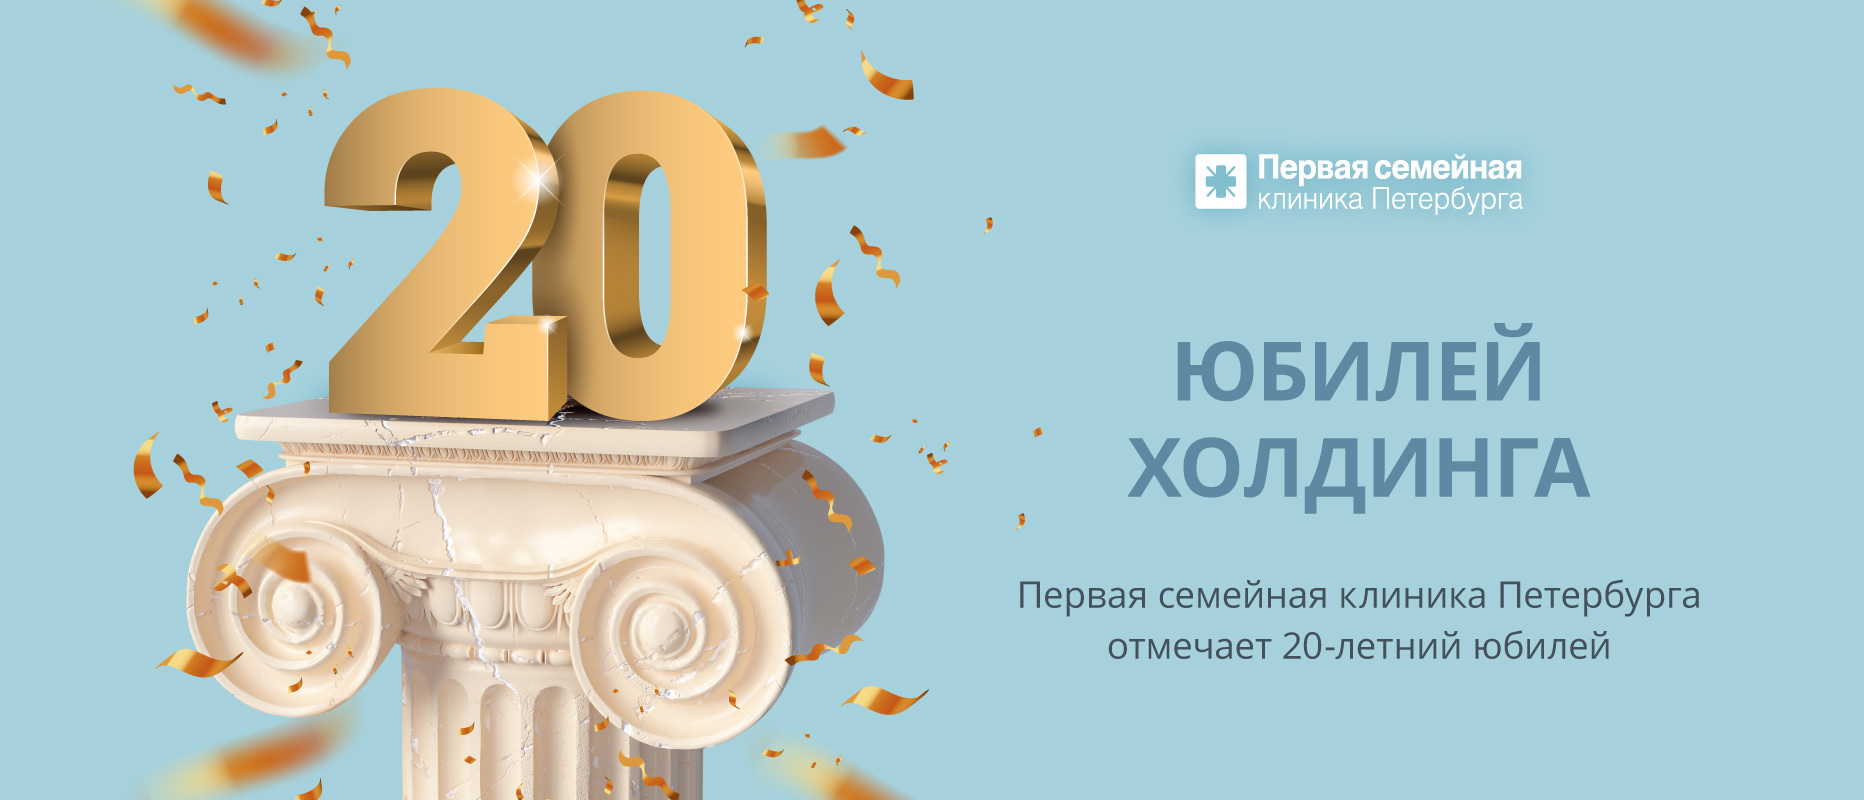 17 января медицинский холдинг «Первая семейная клиника Петербурга» отметил свой 20-й День рождения!